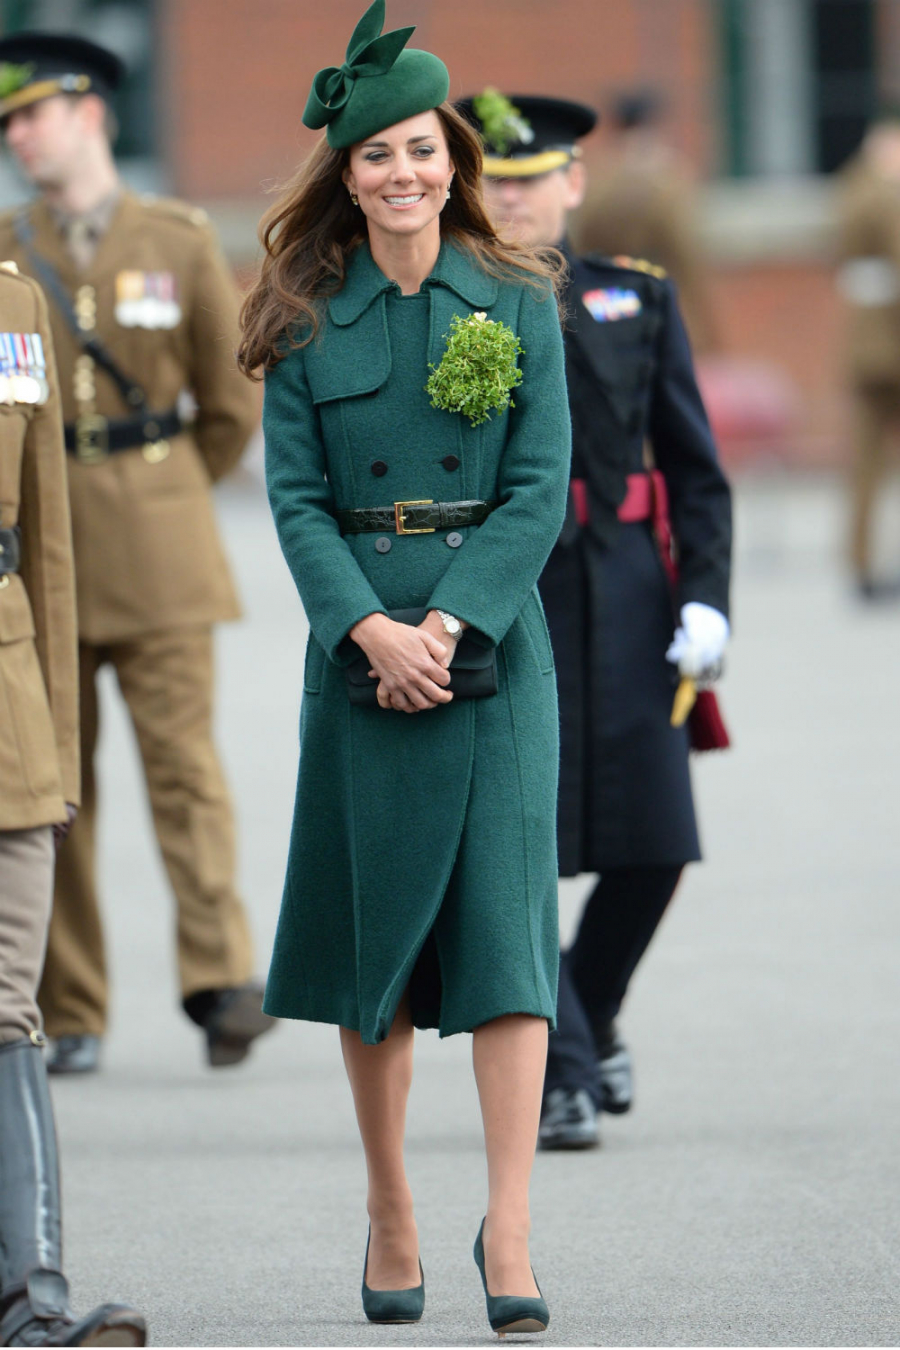 Chiếc đầm dạ màu xanh lục bảo thanh lịch, nhấn nhá hàng cúc trang nhã mà công nương Kate Middleton diện vào ngày thánh Patrick có trị giá 2774 đô la Mỹ (tương đương gần 64 triệu đồng). 